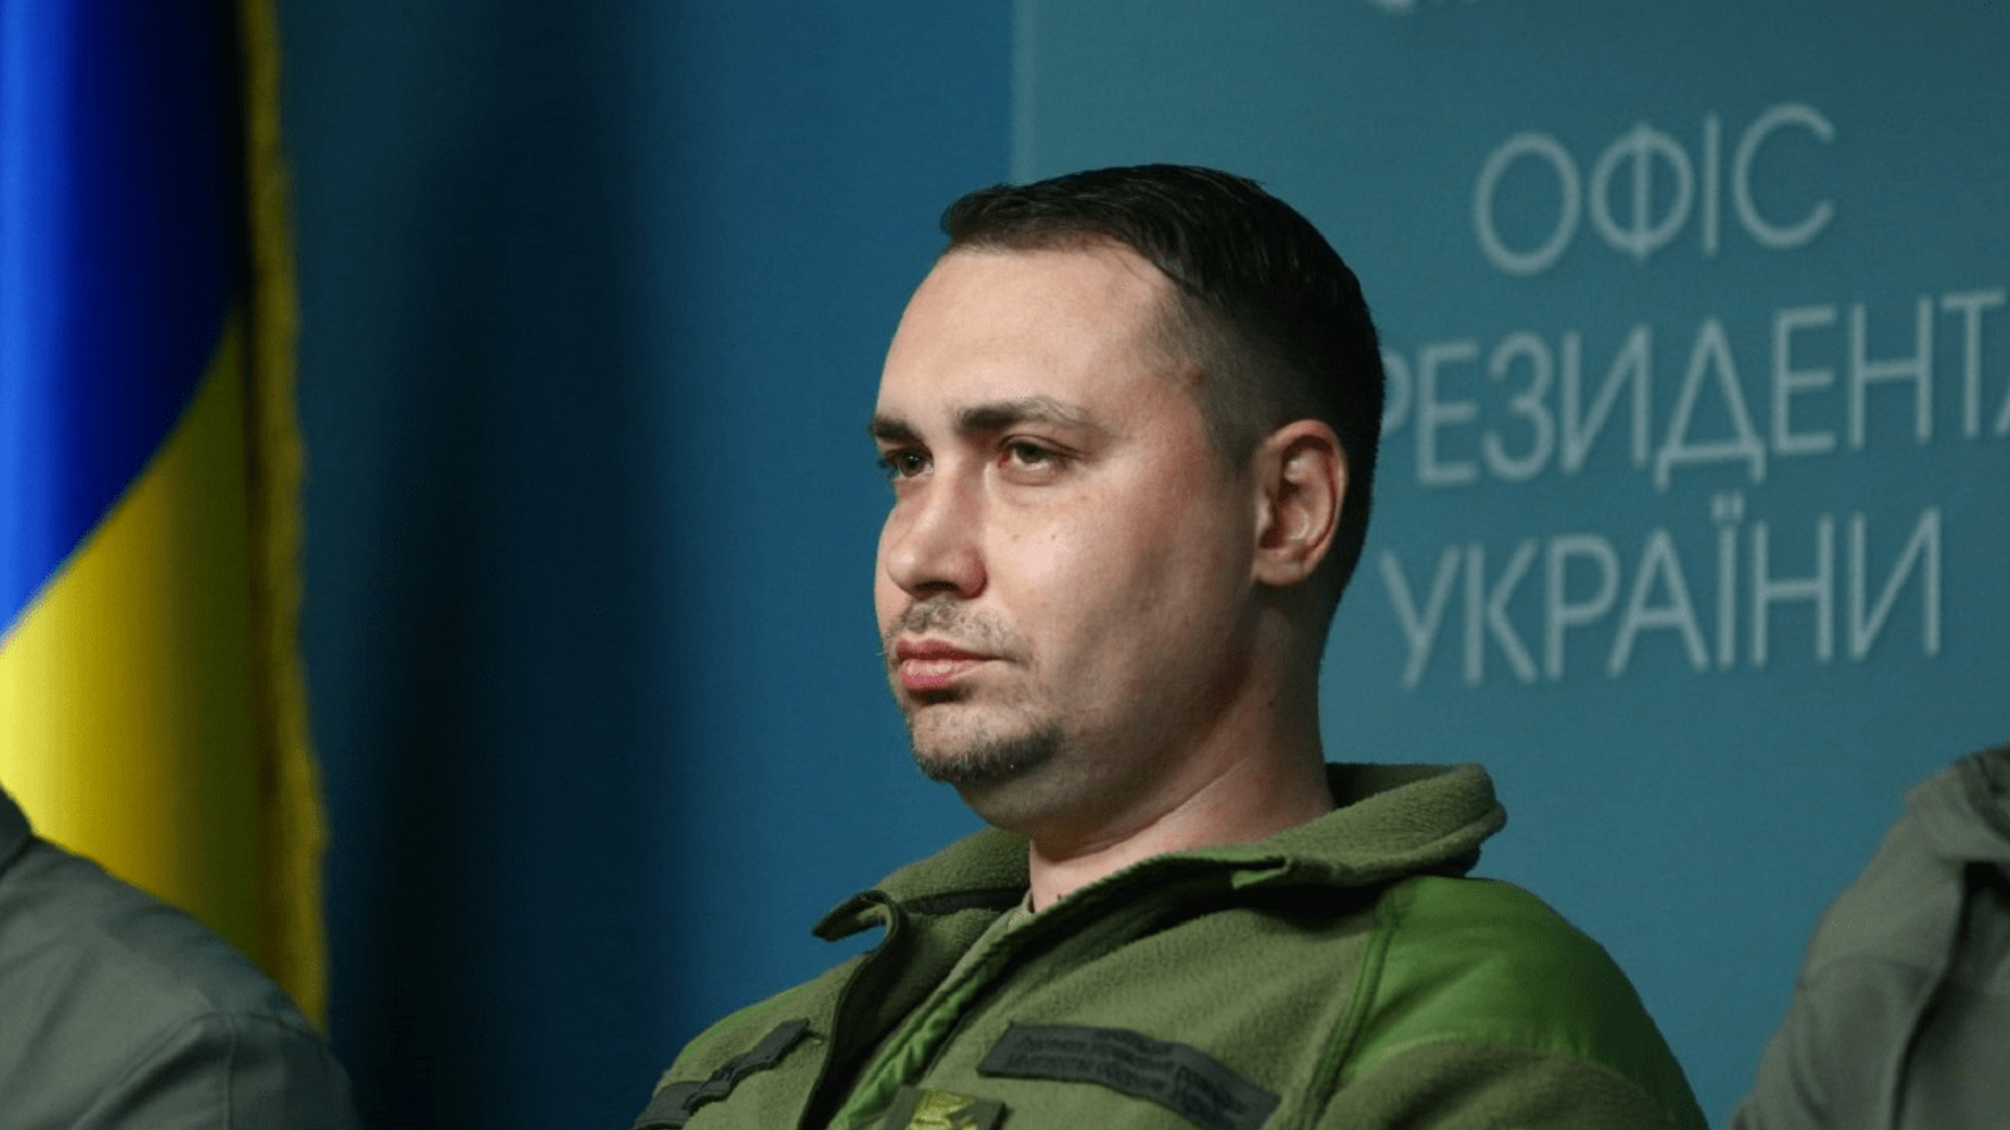 Руководитель украинской разведки хочет быть политологом: Буданов подал документы в Острожскую академию